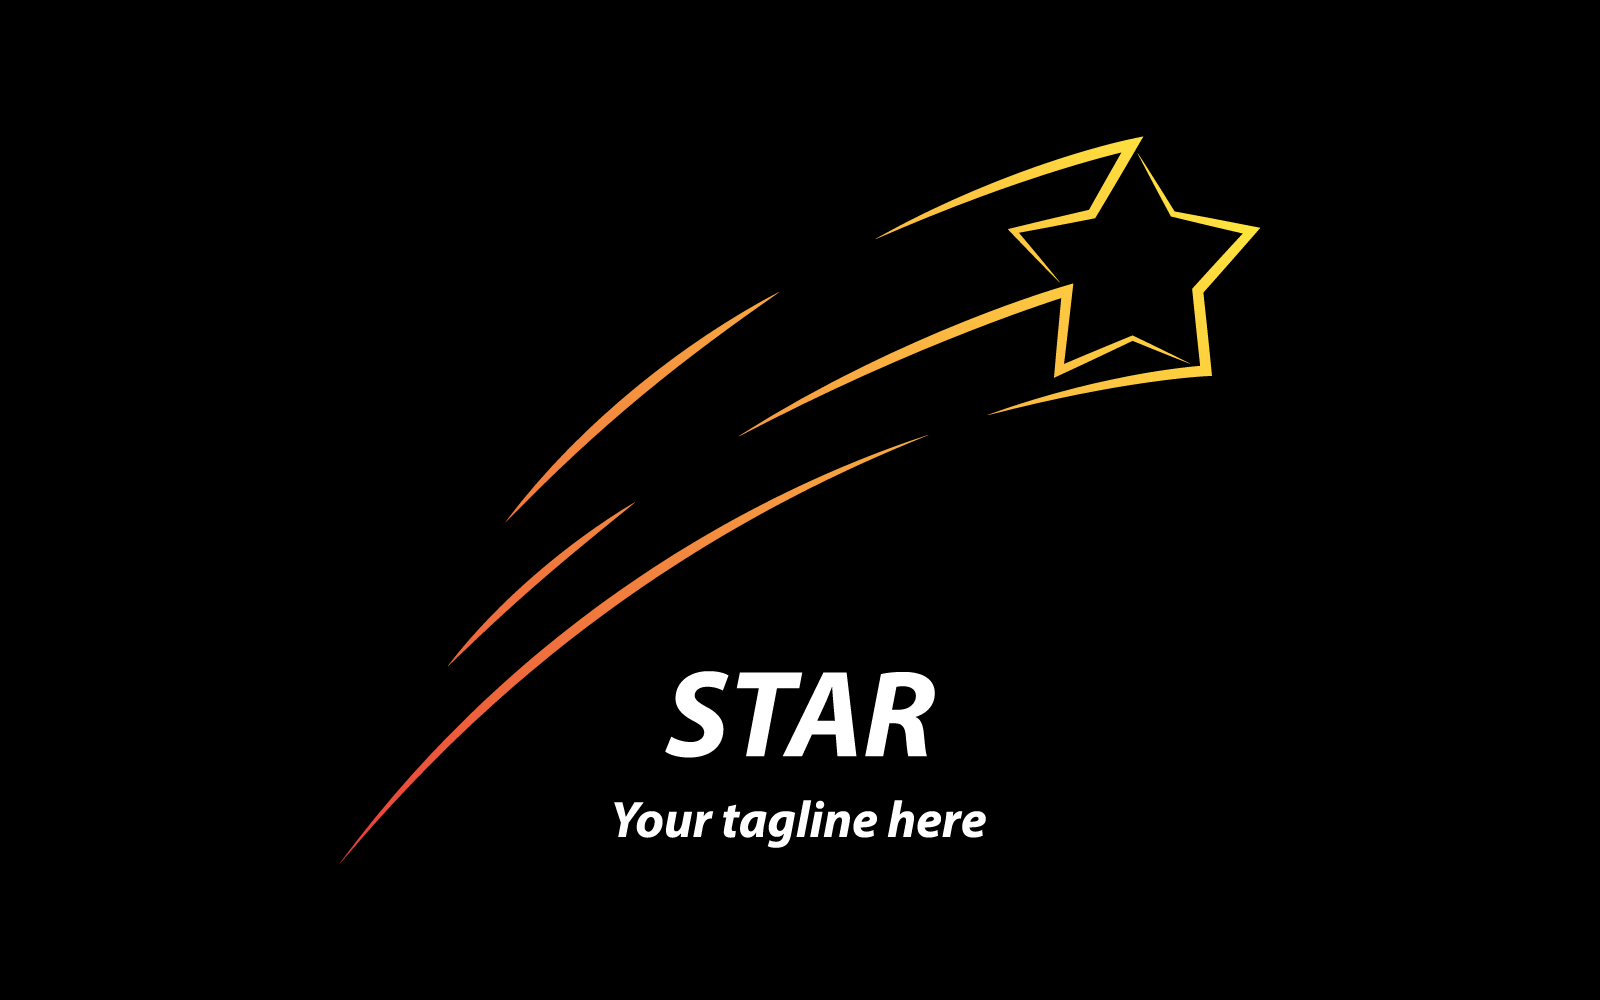 Star brush on black background vector logo design Logo Template